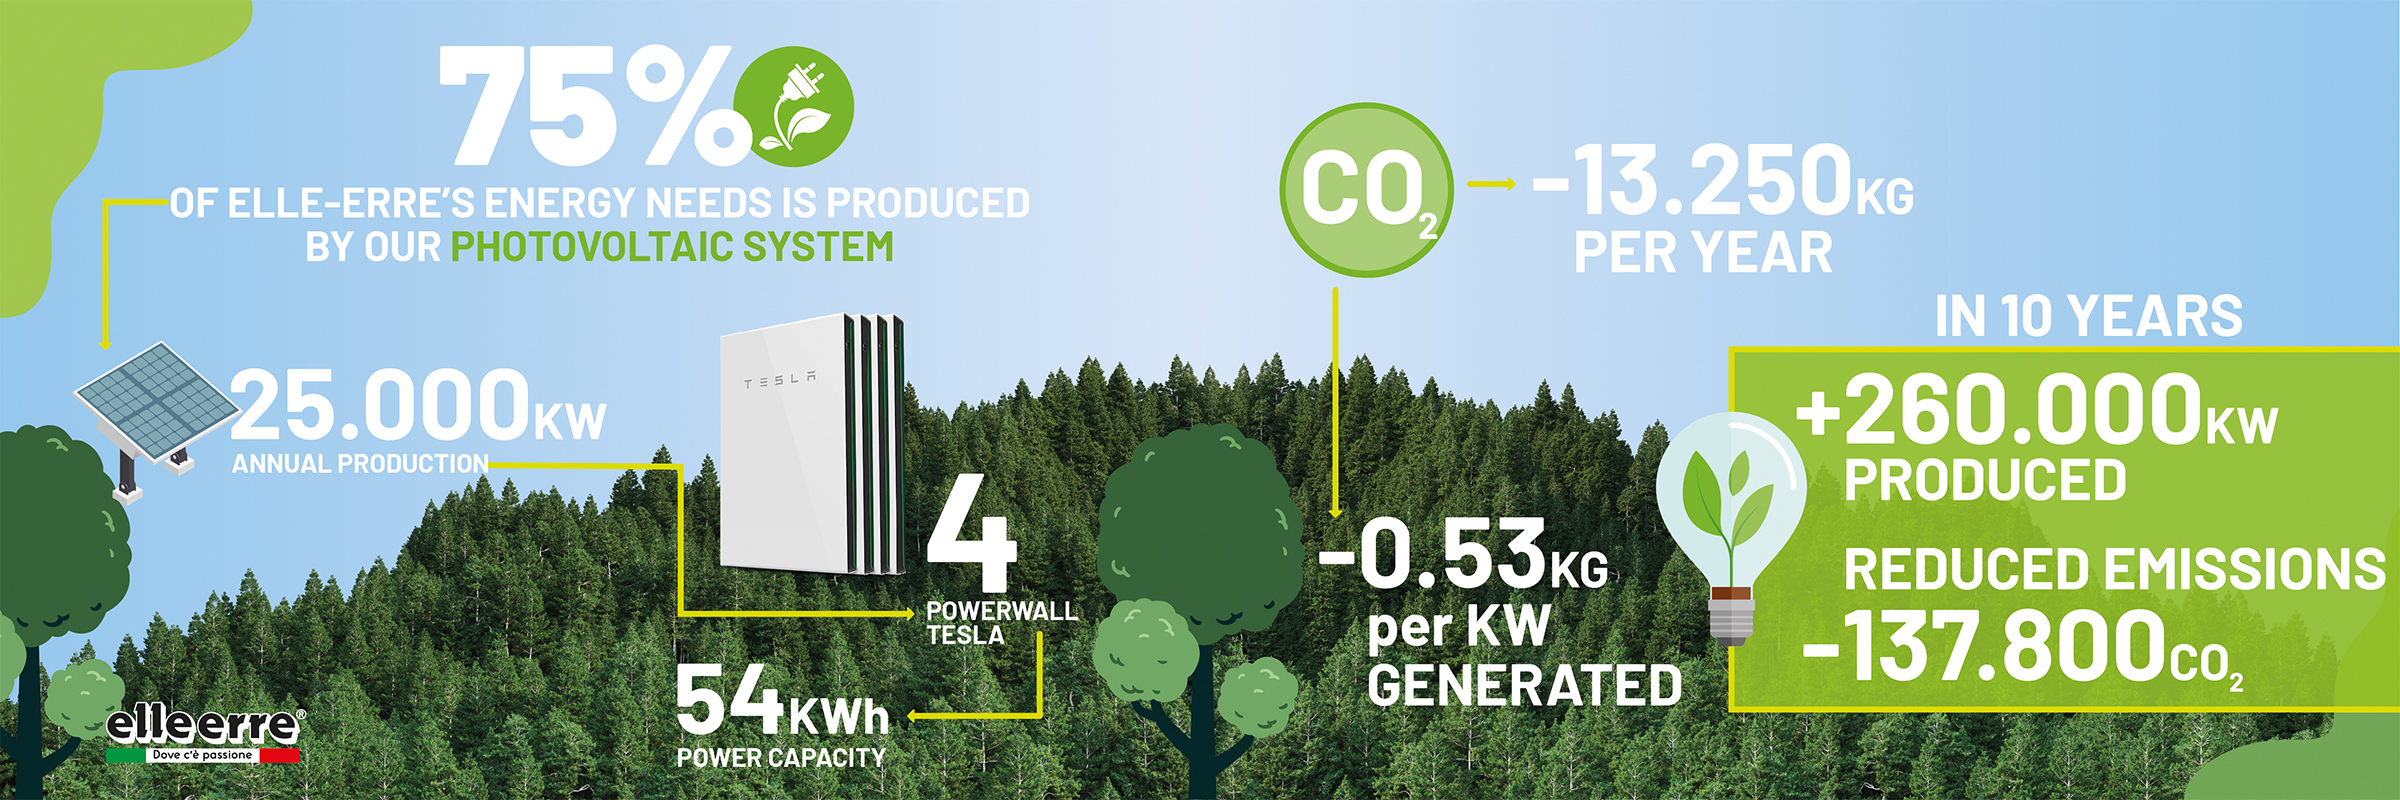 sostenibility-elleerre-infographic